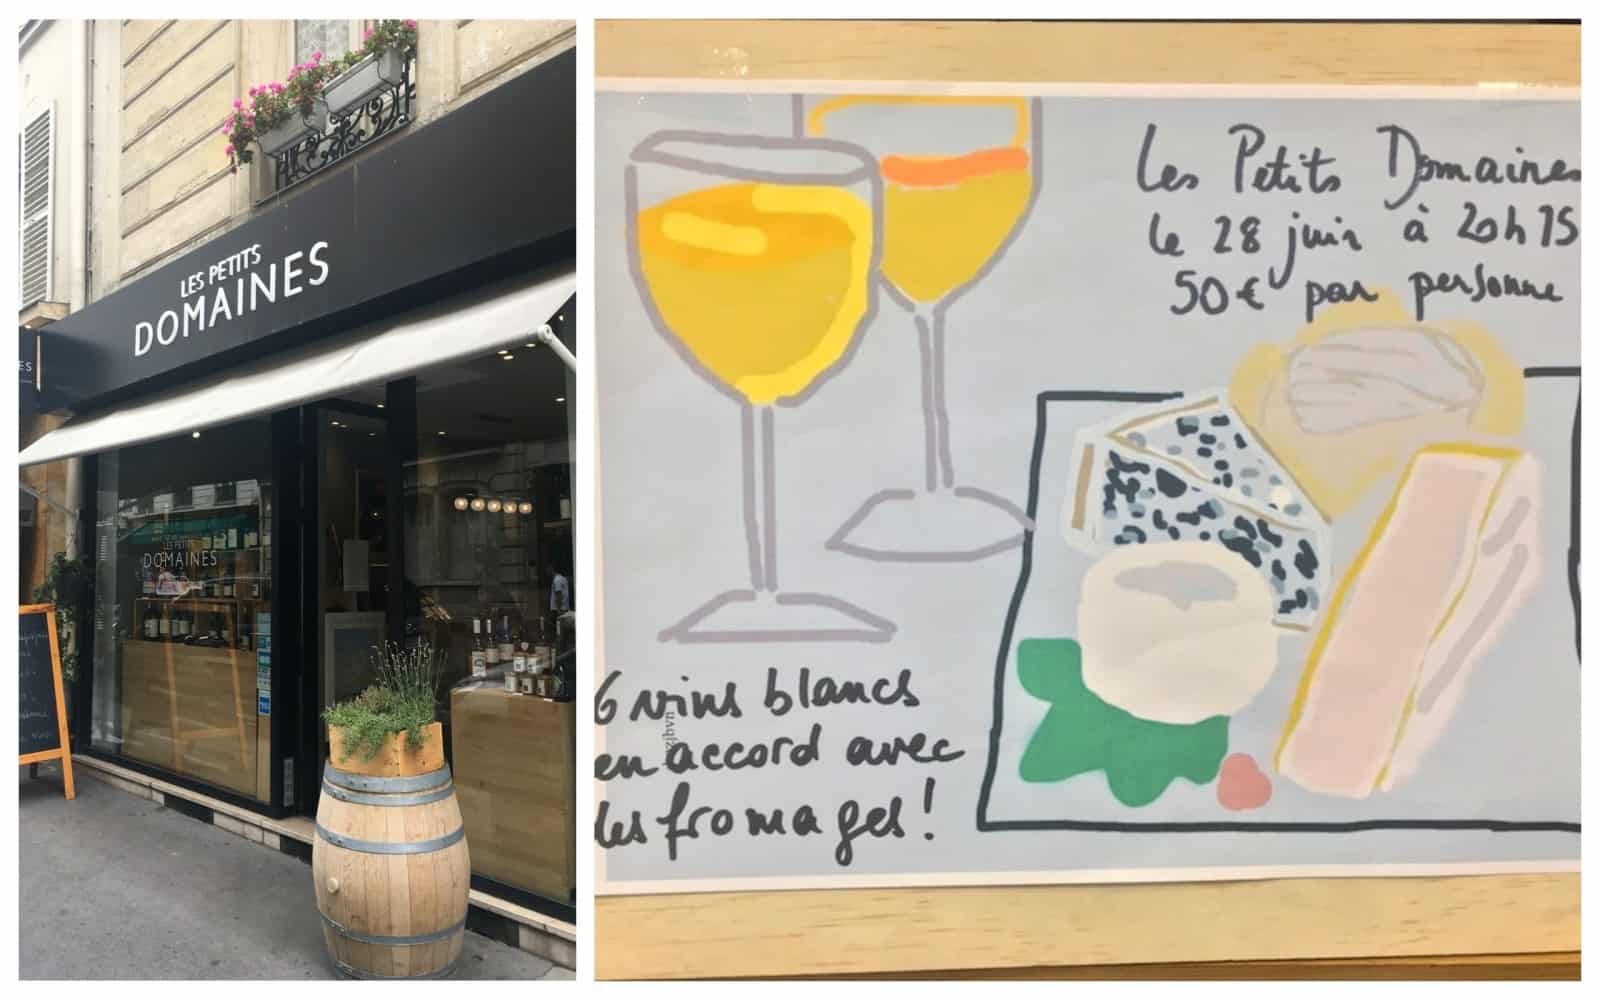 HiP Paris Blog visits Les Petits Domaines - a wine shop for women